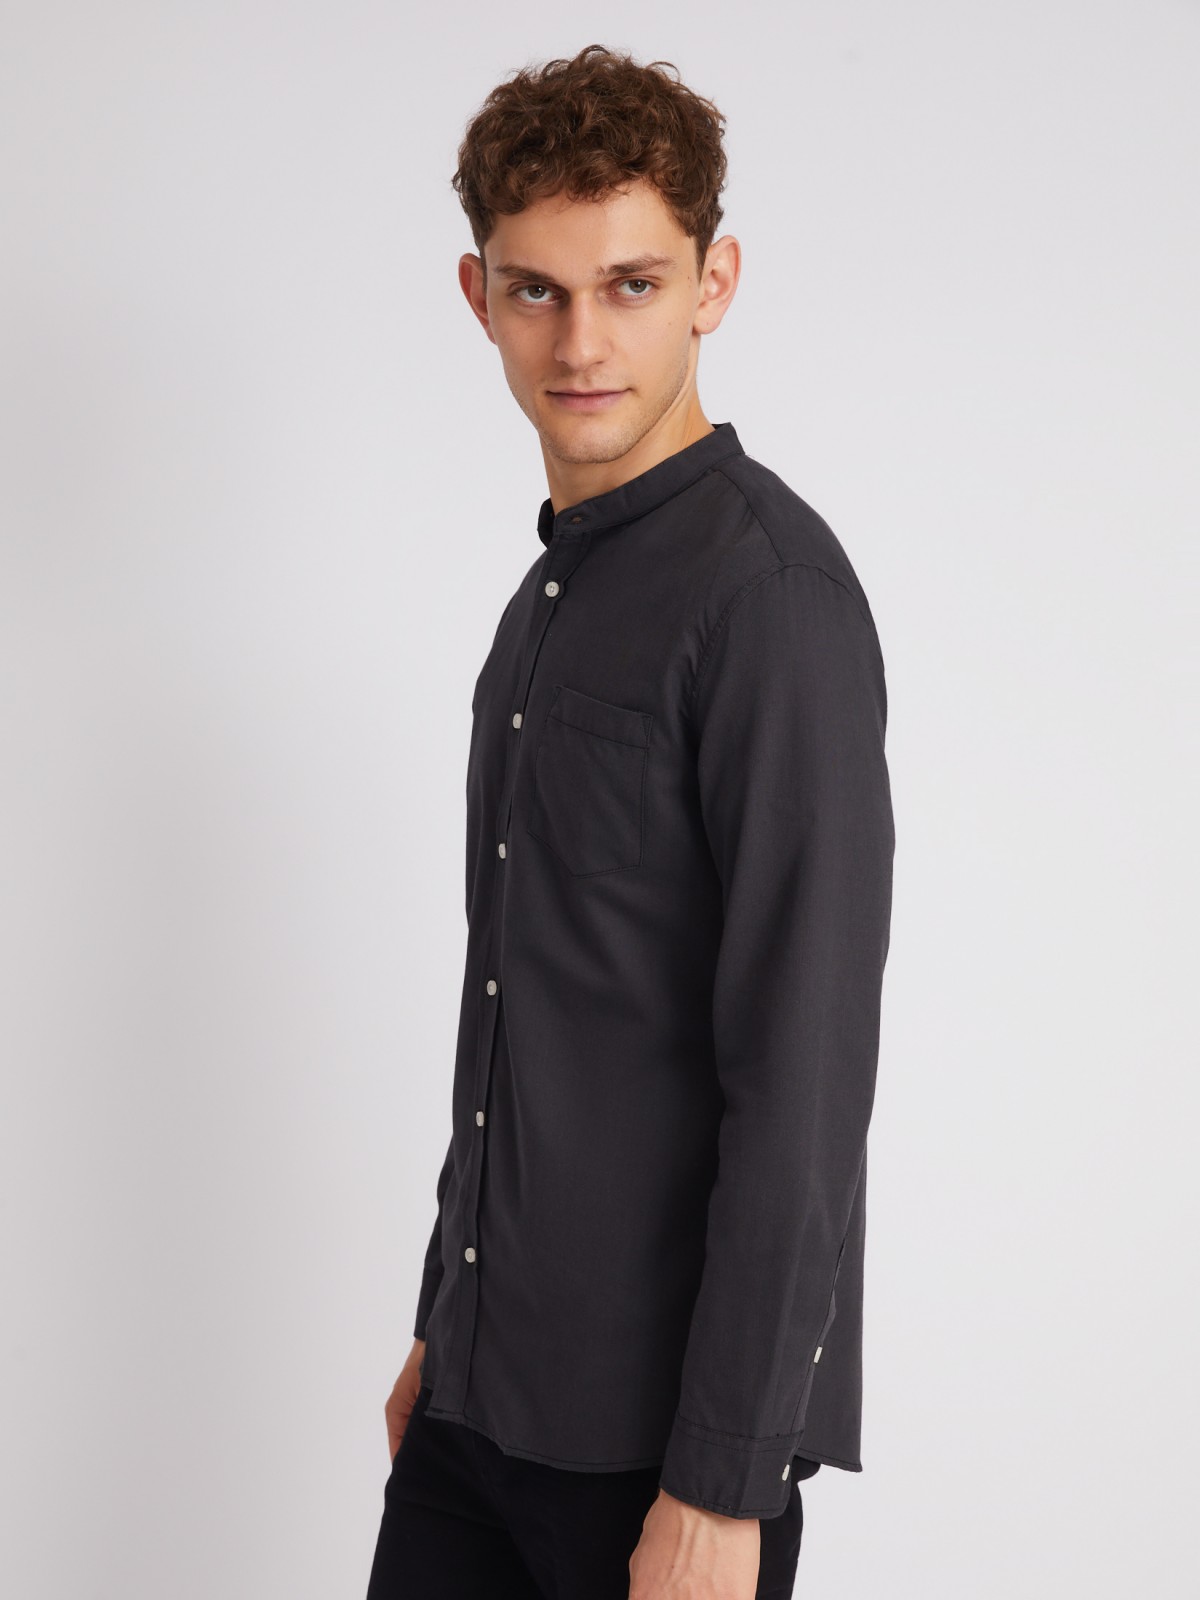 Офисная рубашка с воротником-стойкой и длинным рукавом zolla 21232214R043, цвет черный, размер S - фото 4